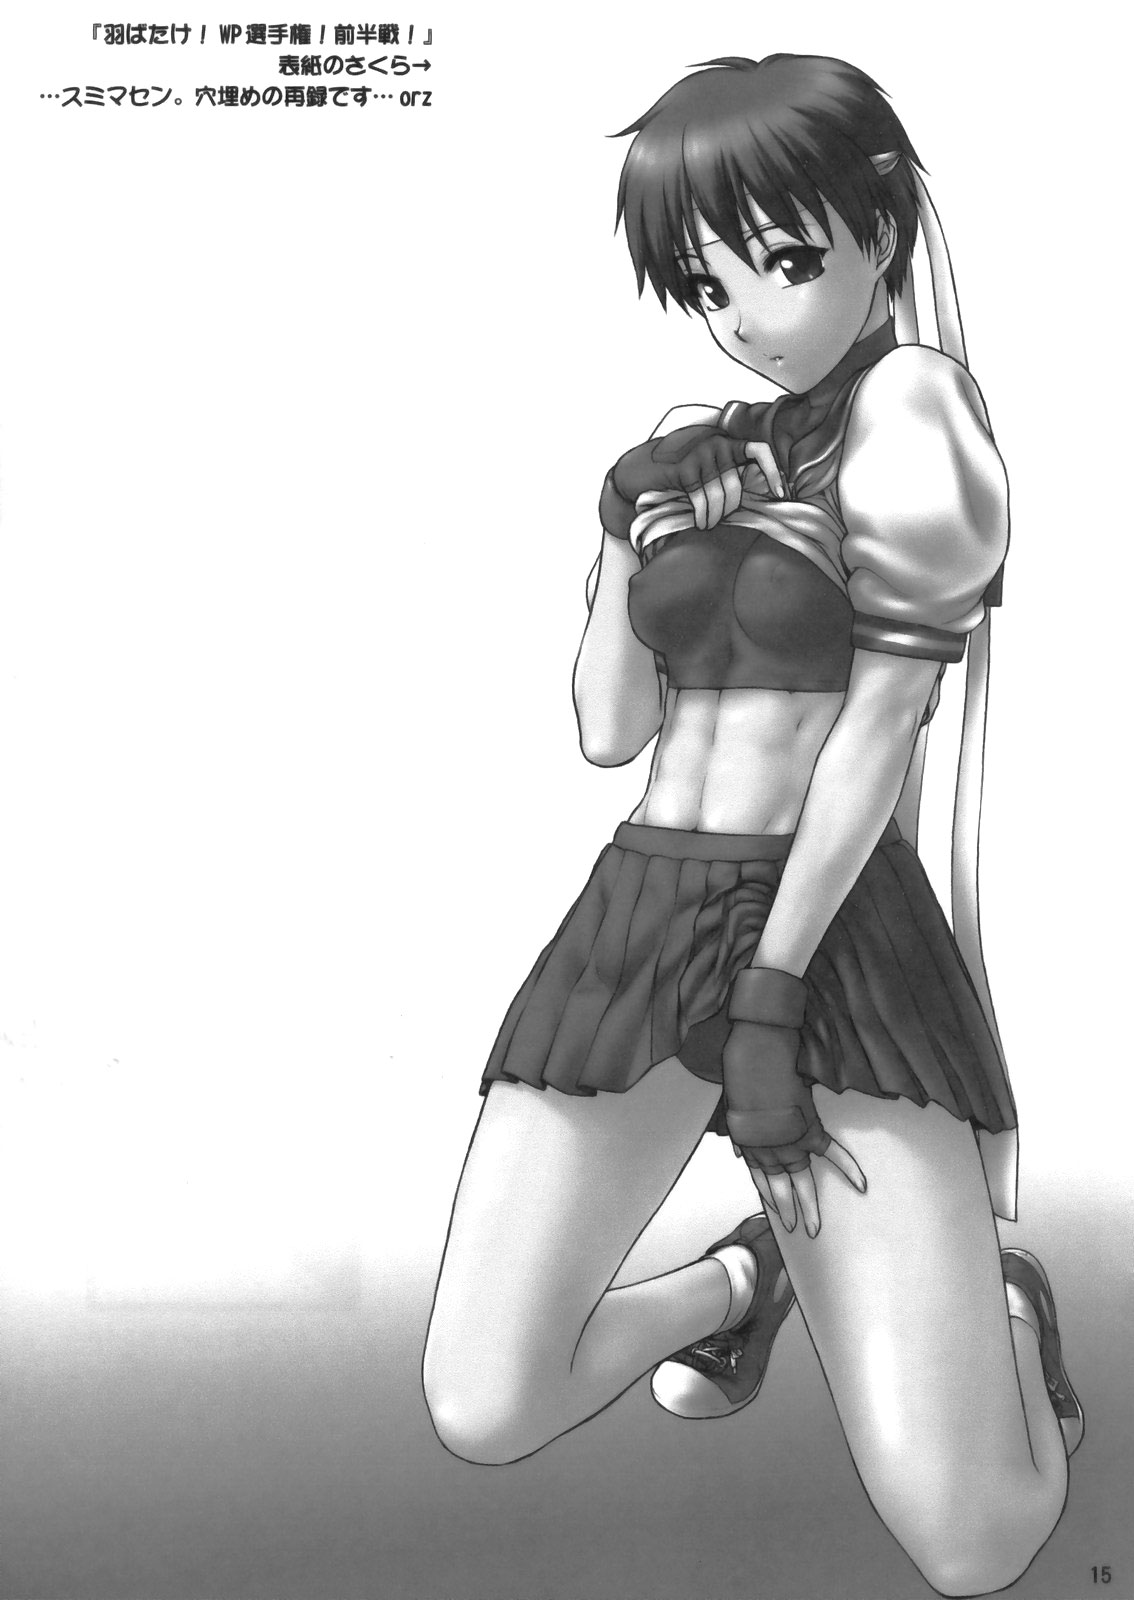 [Shinnihon Pepsitou] Sakura Shoku (Street Fighter) [Spanish] 